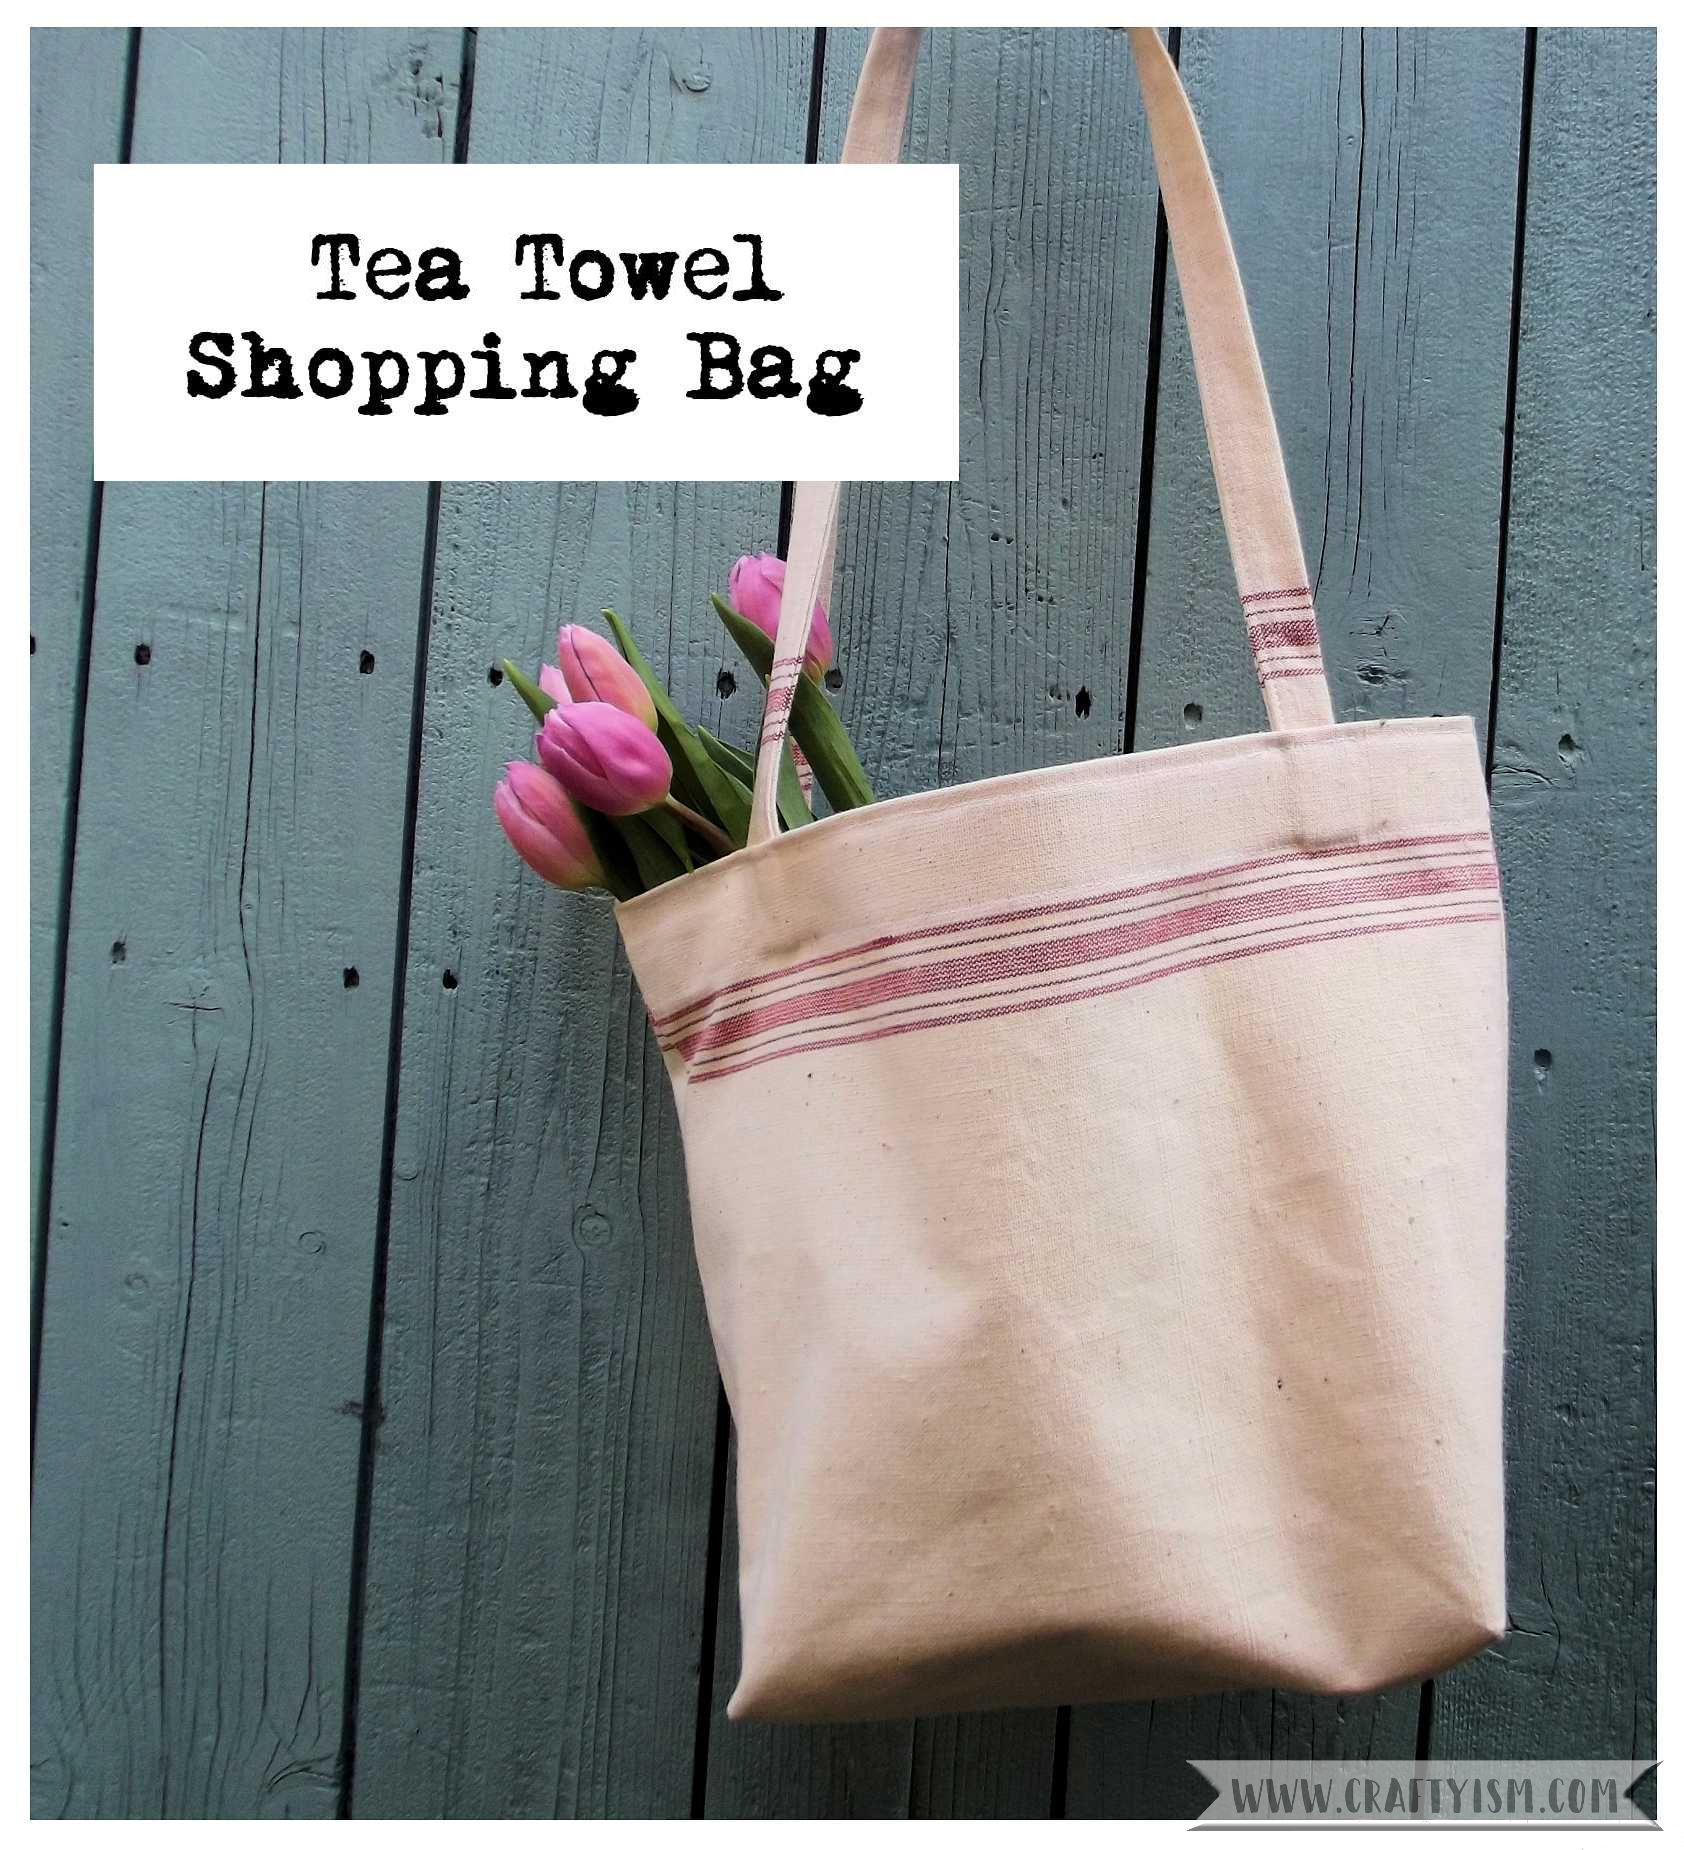 Tea towel shoping bag